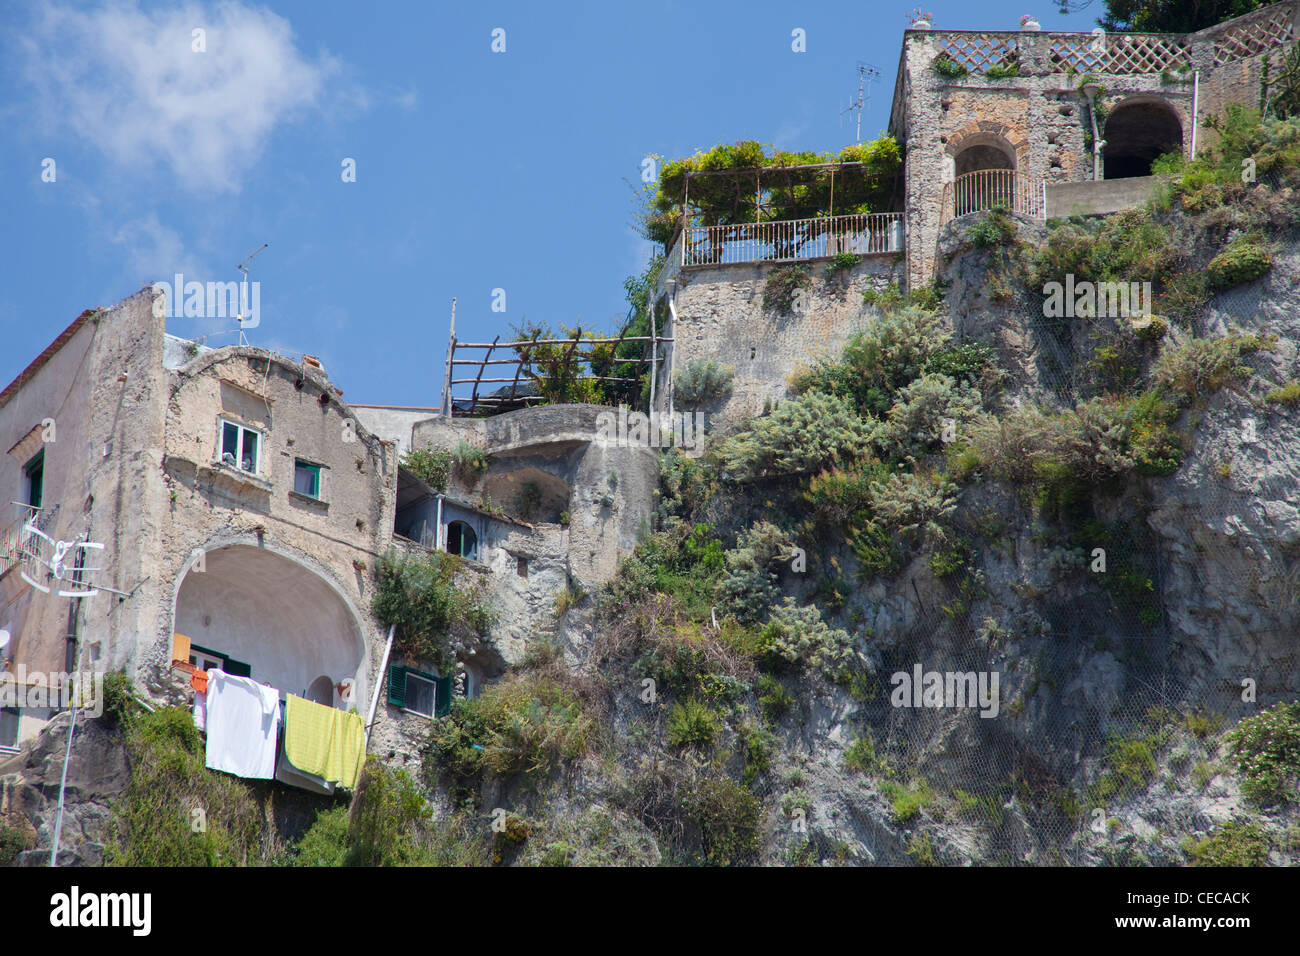 Vecchia casa facciate con outhanging servizio lavanderia, villaggio Amalfi in costiera amalfitana, sito Patrimonio Mondiale dell'Unesco, Campania, Italia, mare Mediterraneo, Europa Foto Stock